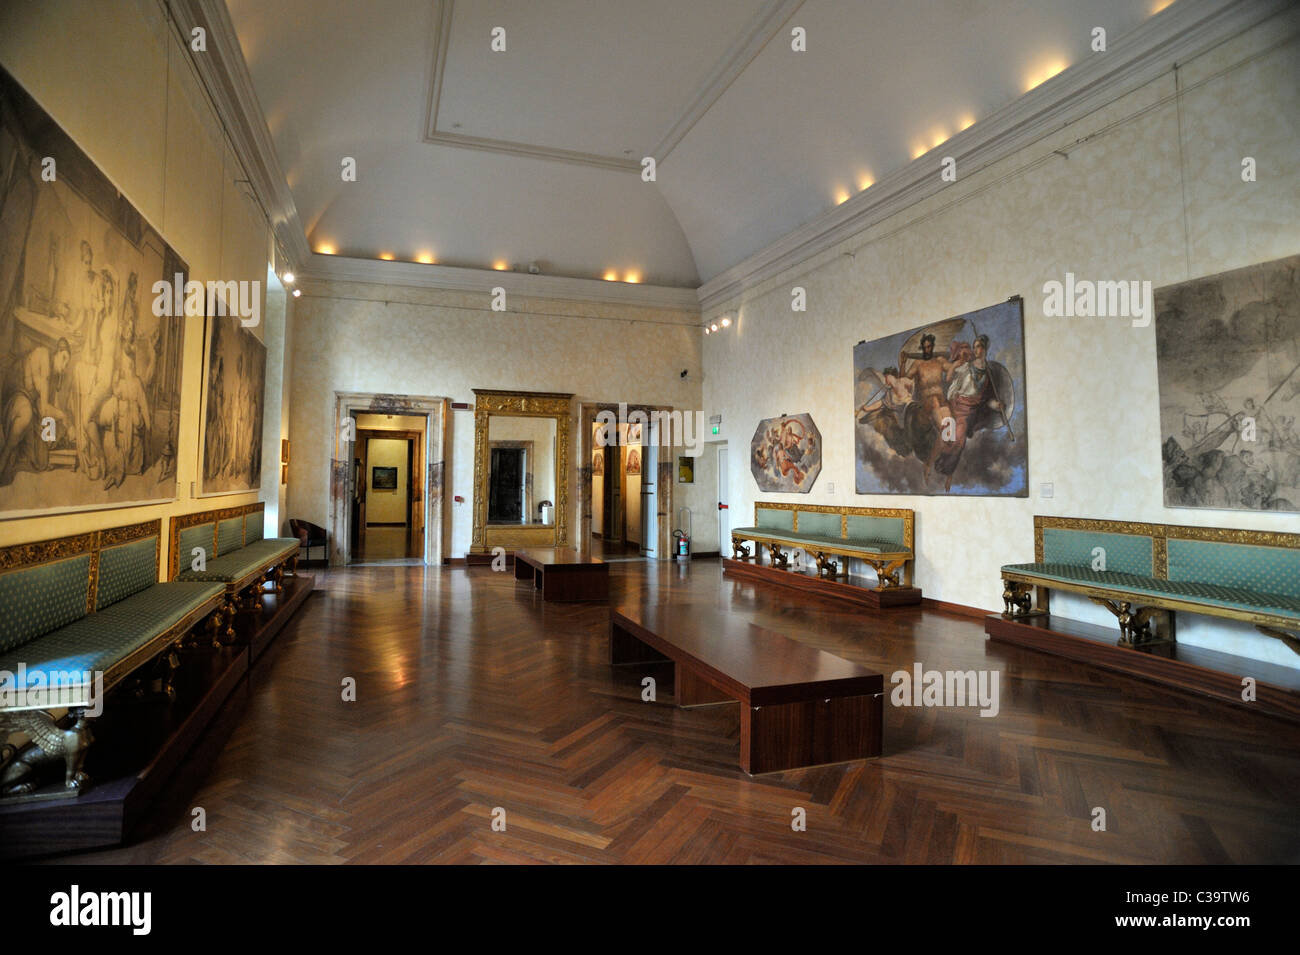 italy, rome, palazzo braschi, museo di roma, rome civic museum interior Stock Photo